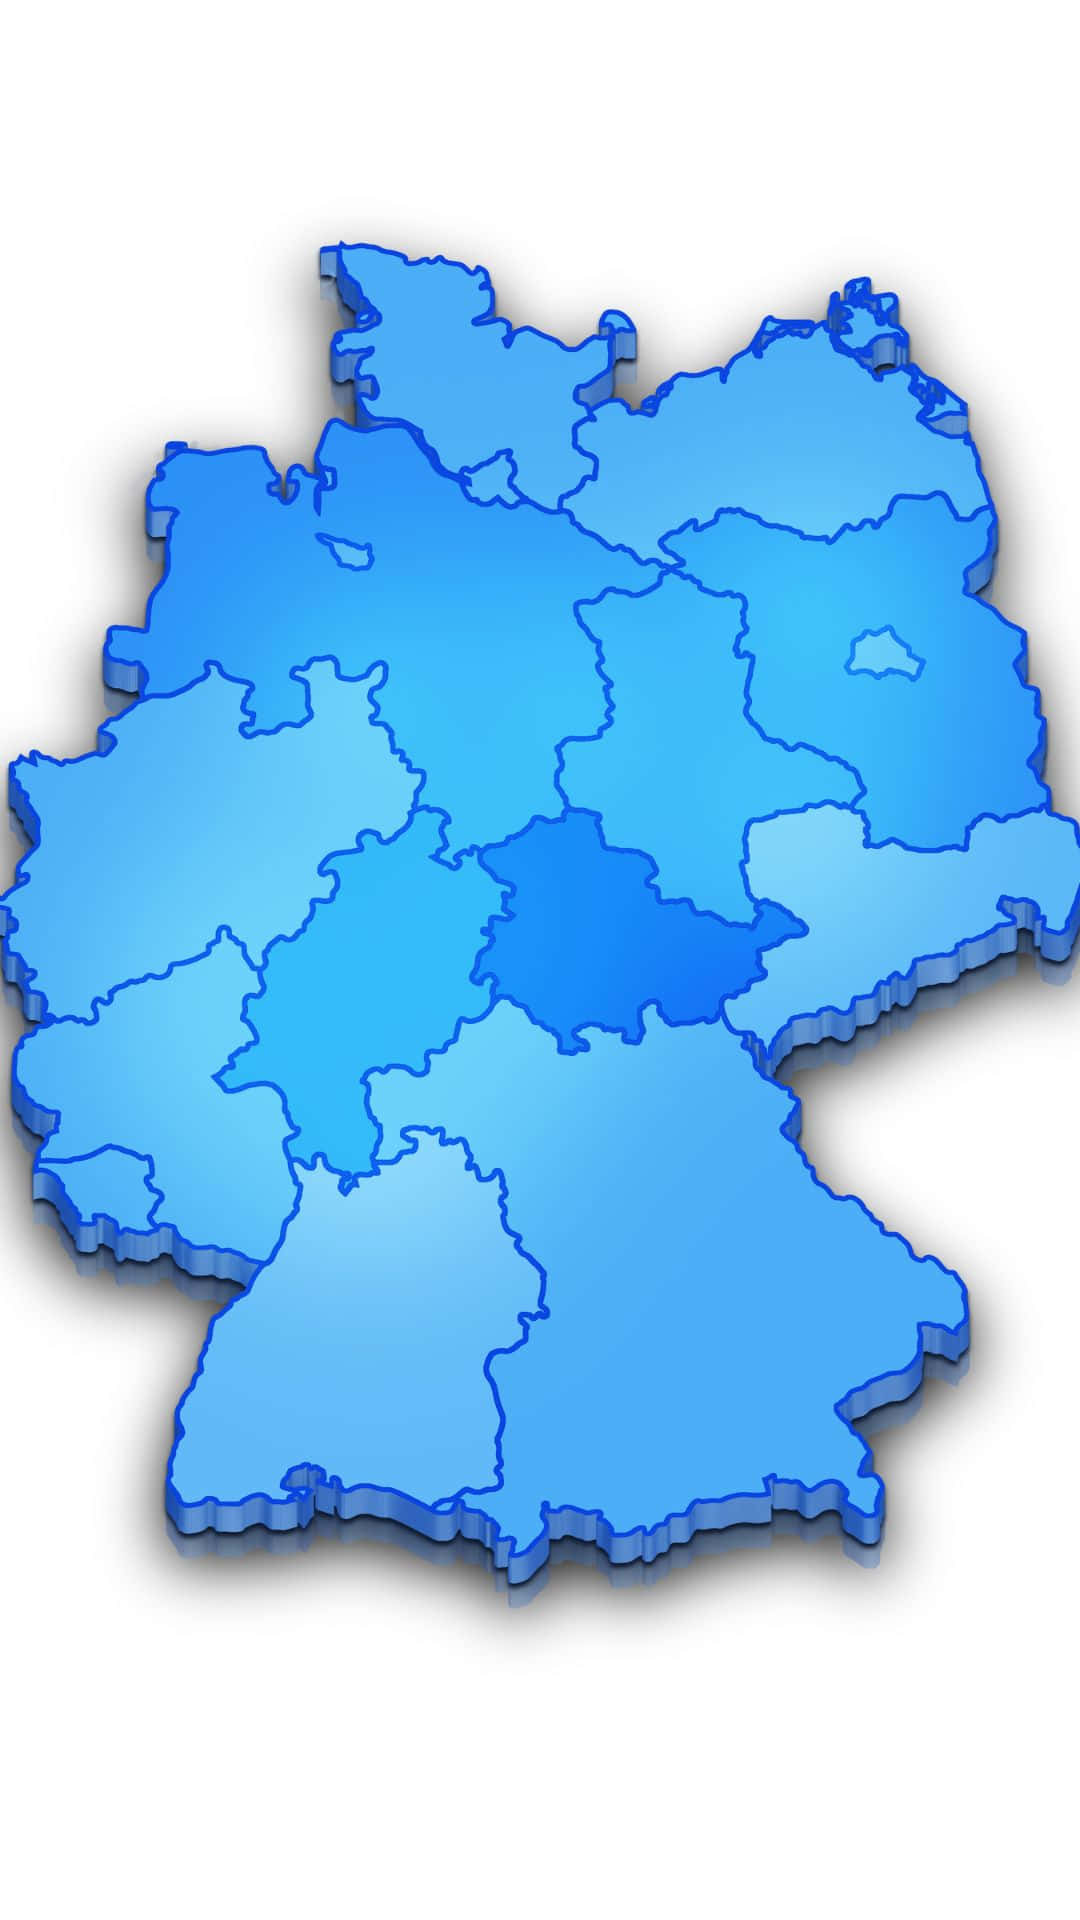 Blåbakgrund Med Karta Över Förbundsrepubliken Tyskland.